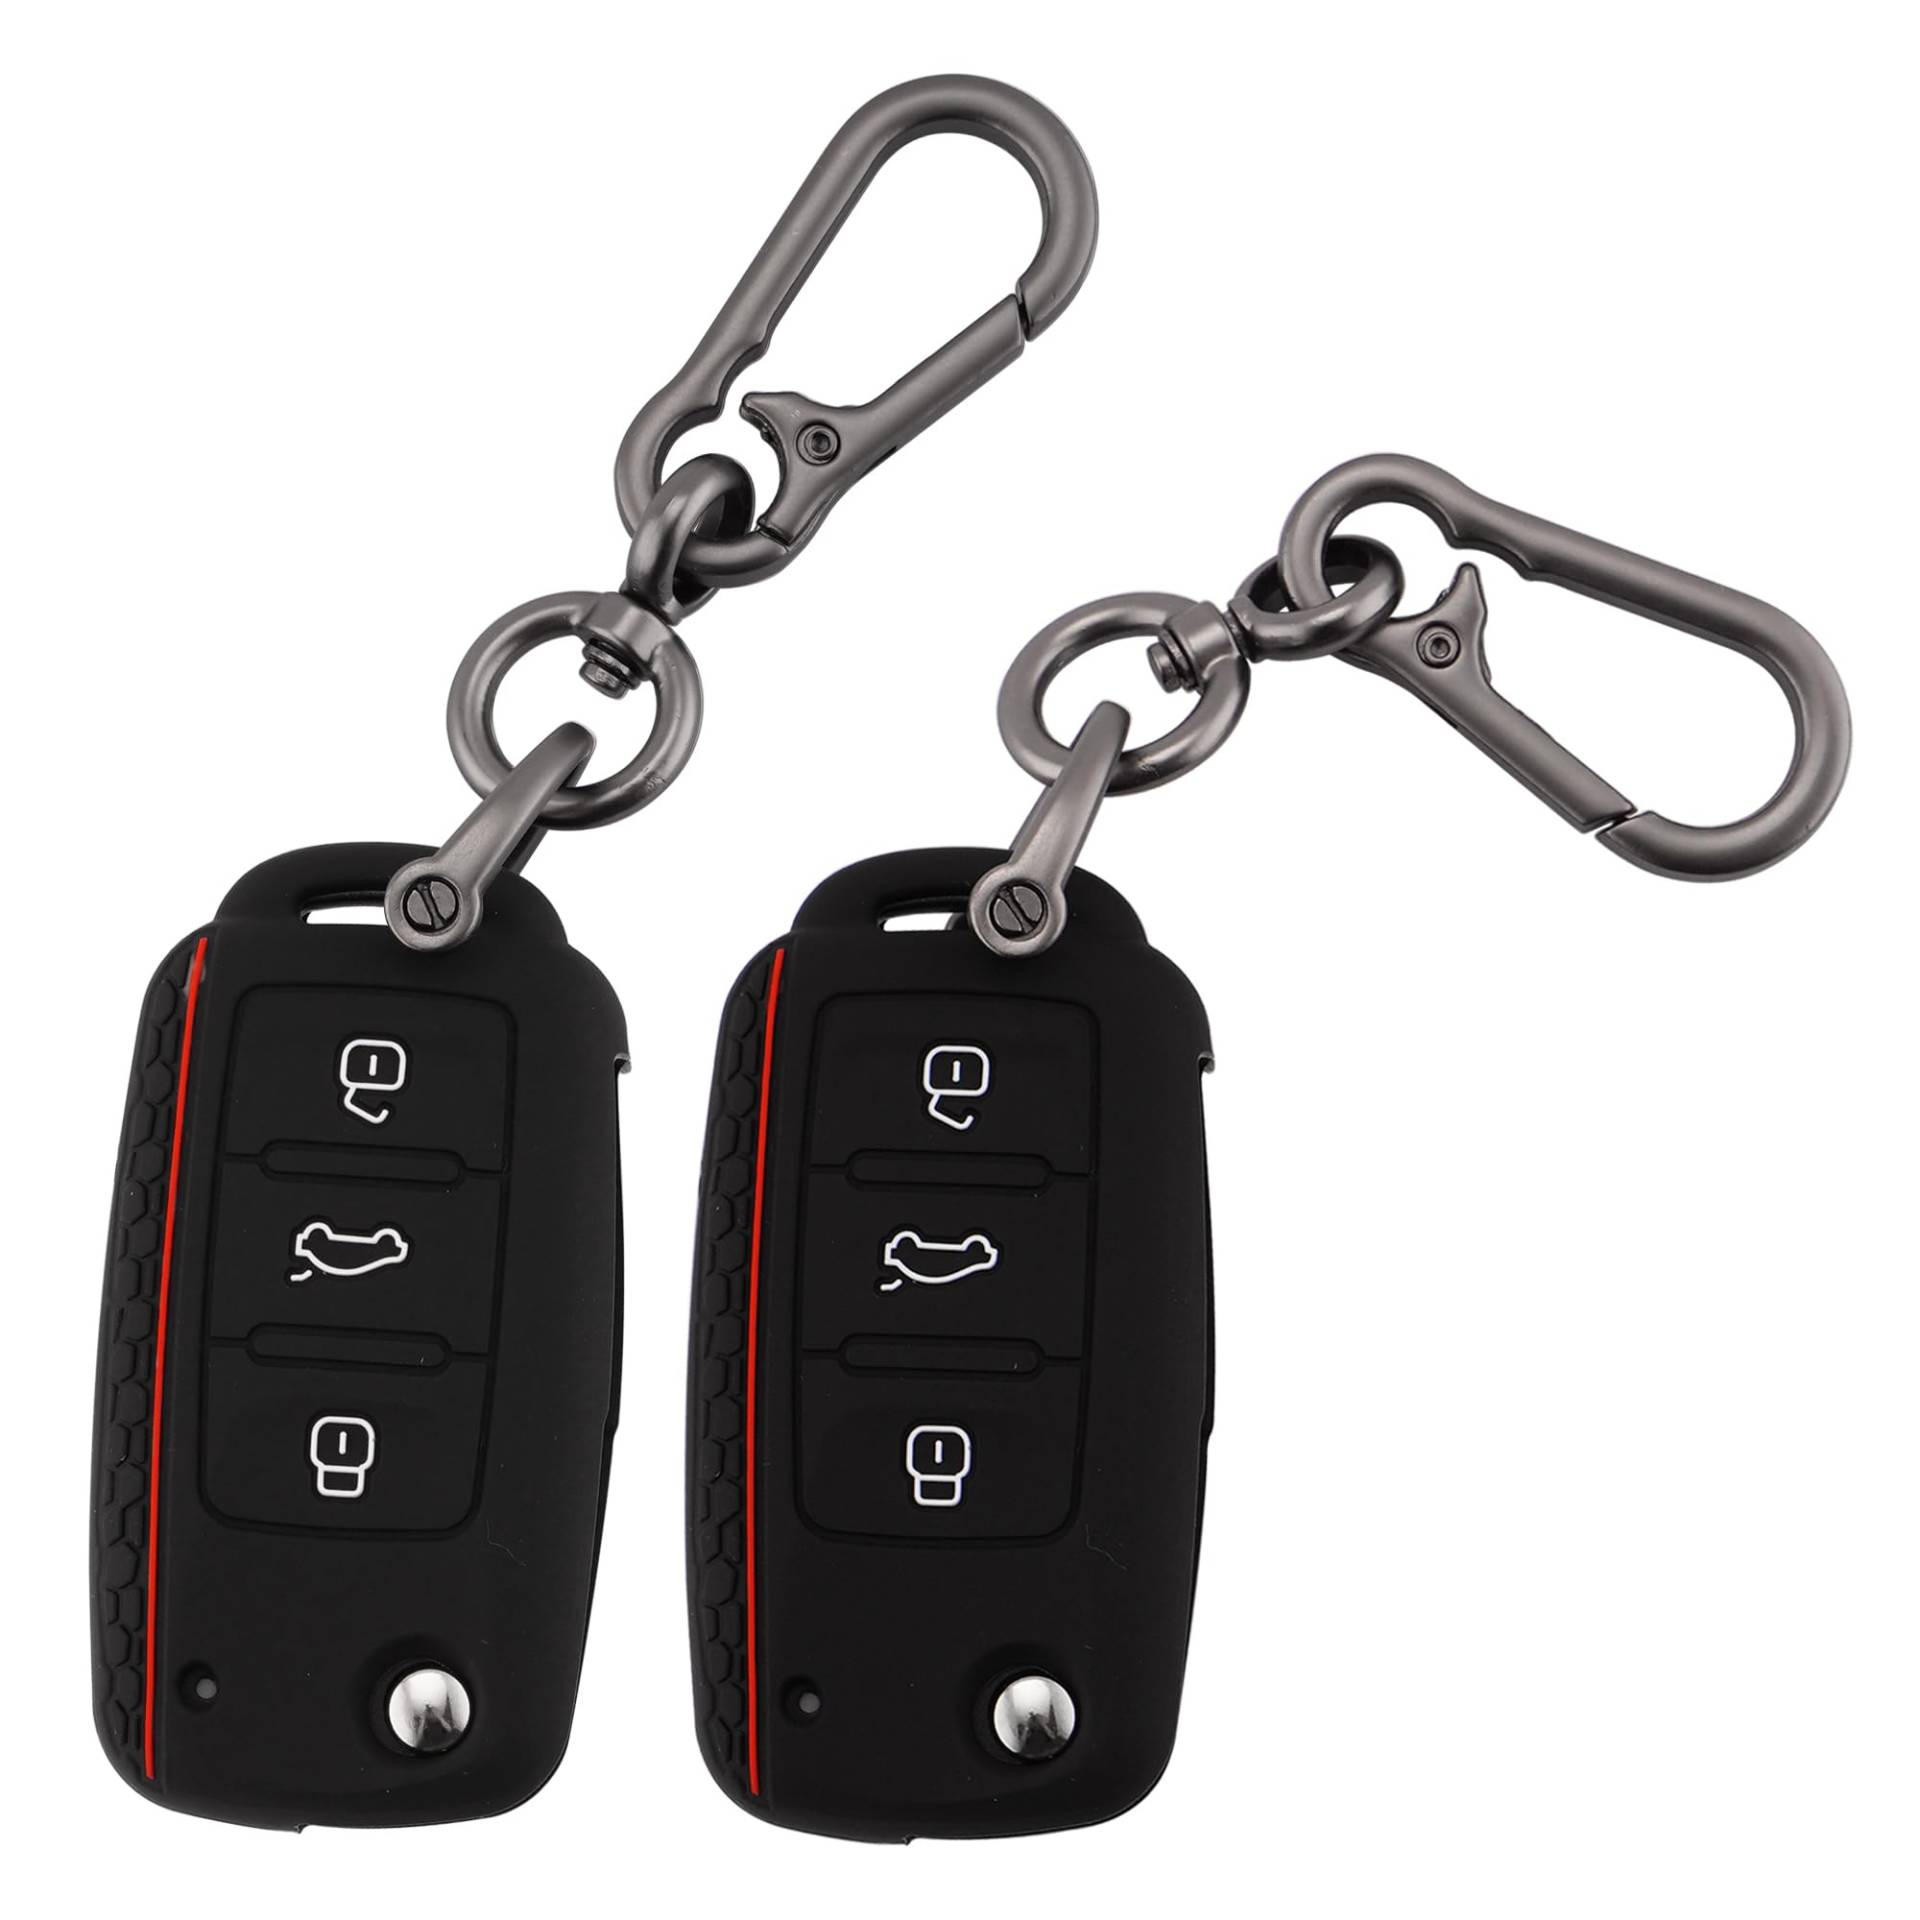 ERMWALR Auto-Schlüsselanhänger-Abdeckung mit Schlüsselanhänger für VW, 3 Tasten, Schlüsselgehäuse, passend für VW Volkswagen Tiguan Passat Golf Polo Beetle Jetta Touran Scirocco, 2 Stück (Vlw-3S-BB) von ERMWALR